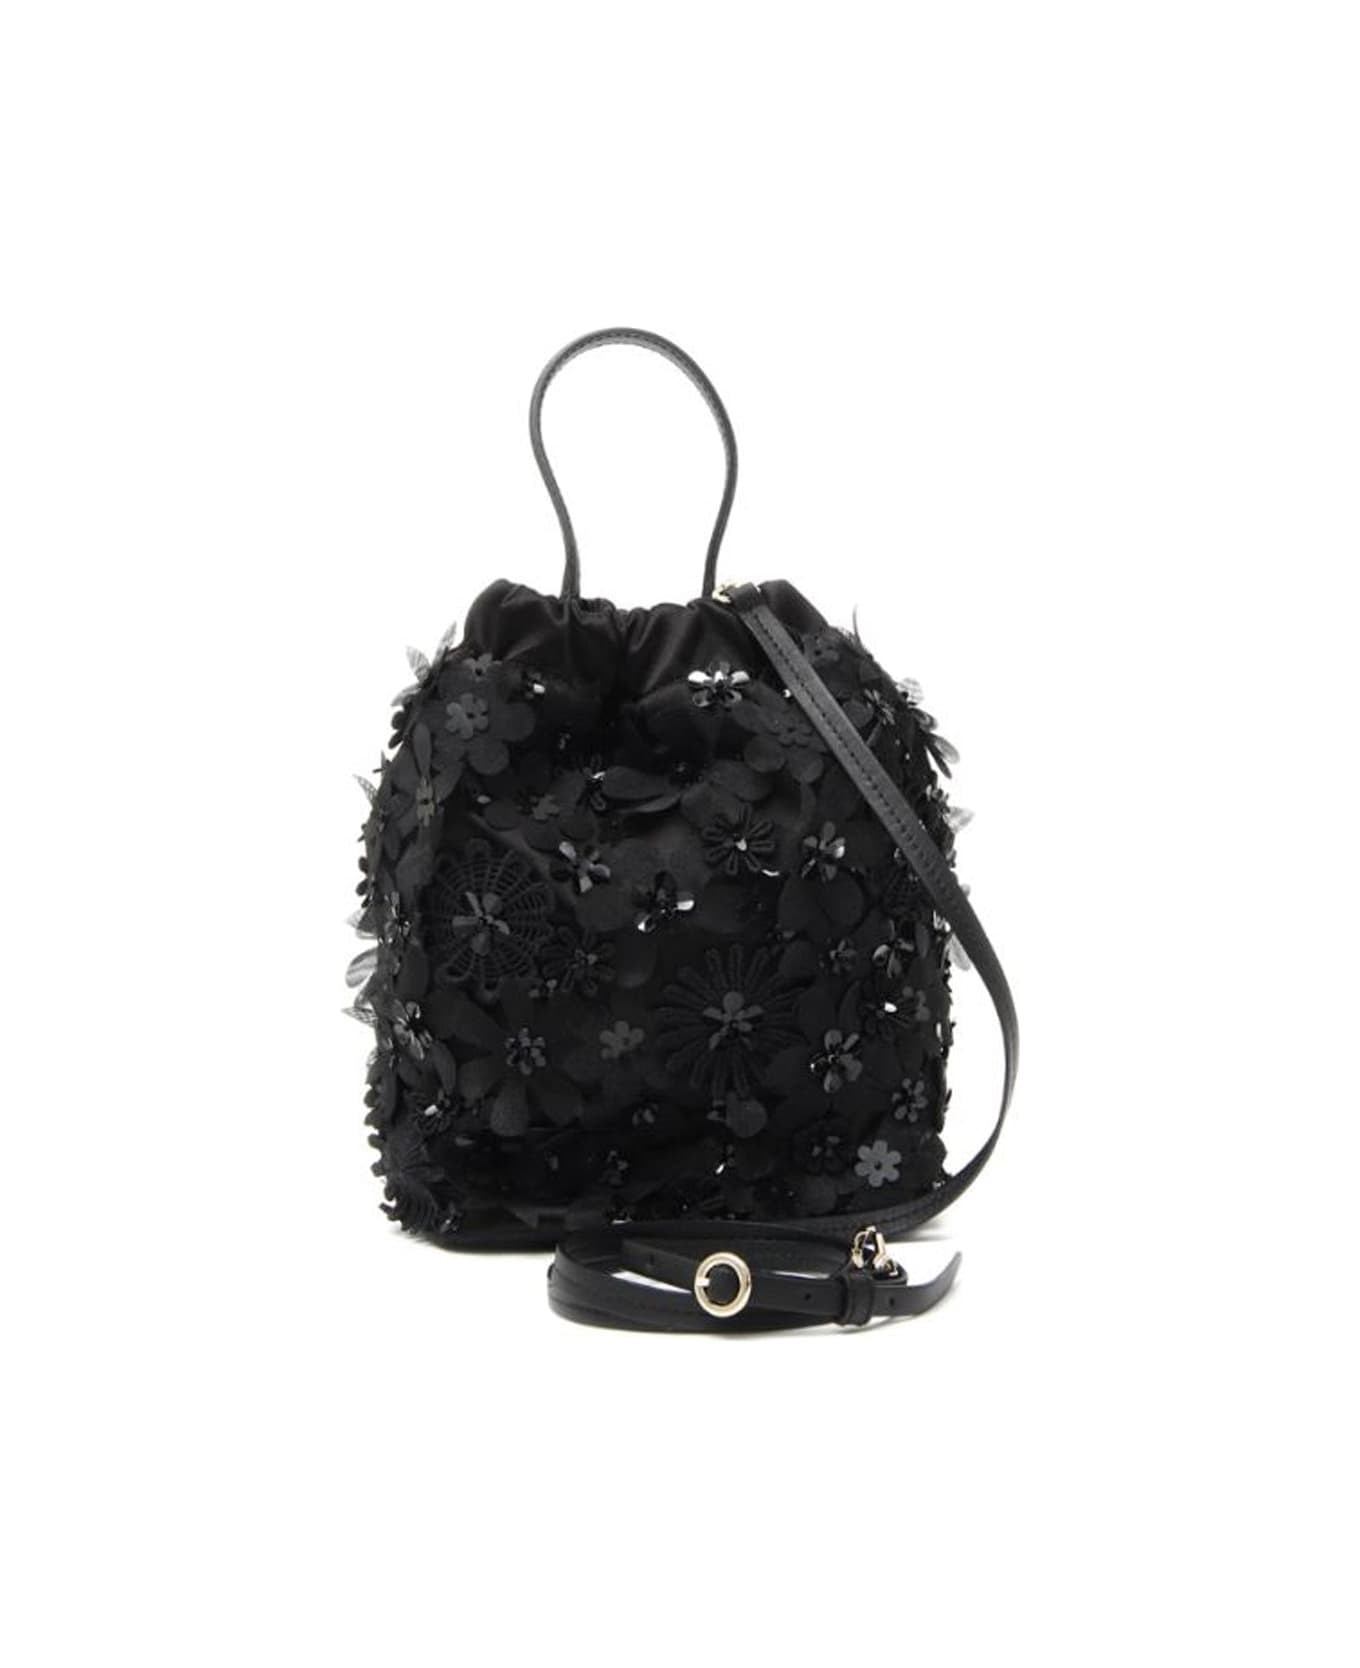 Max Mara Accessori Soiree2 Silk And Leather Bag - Black